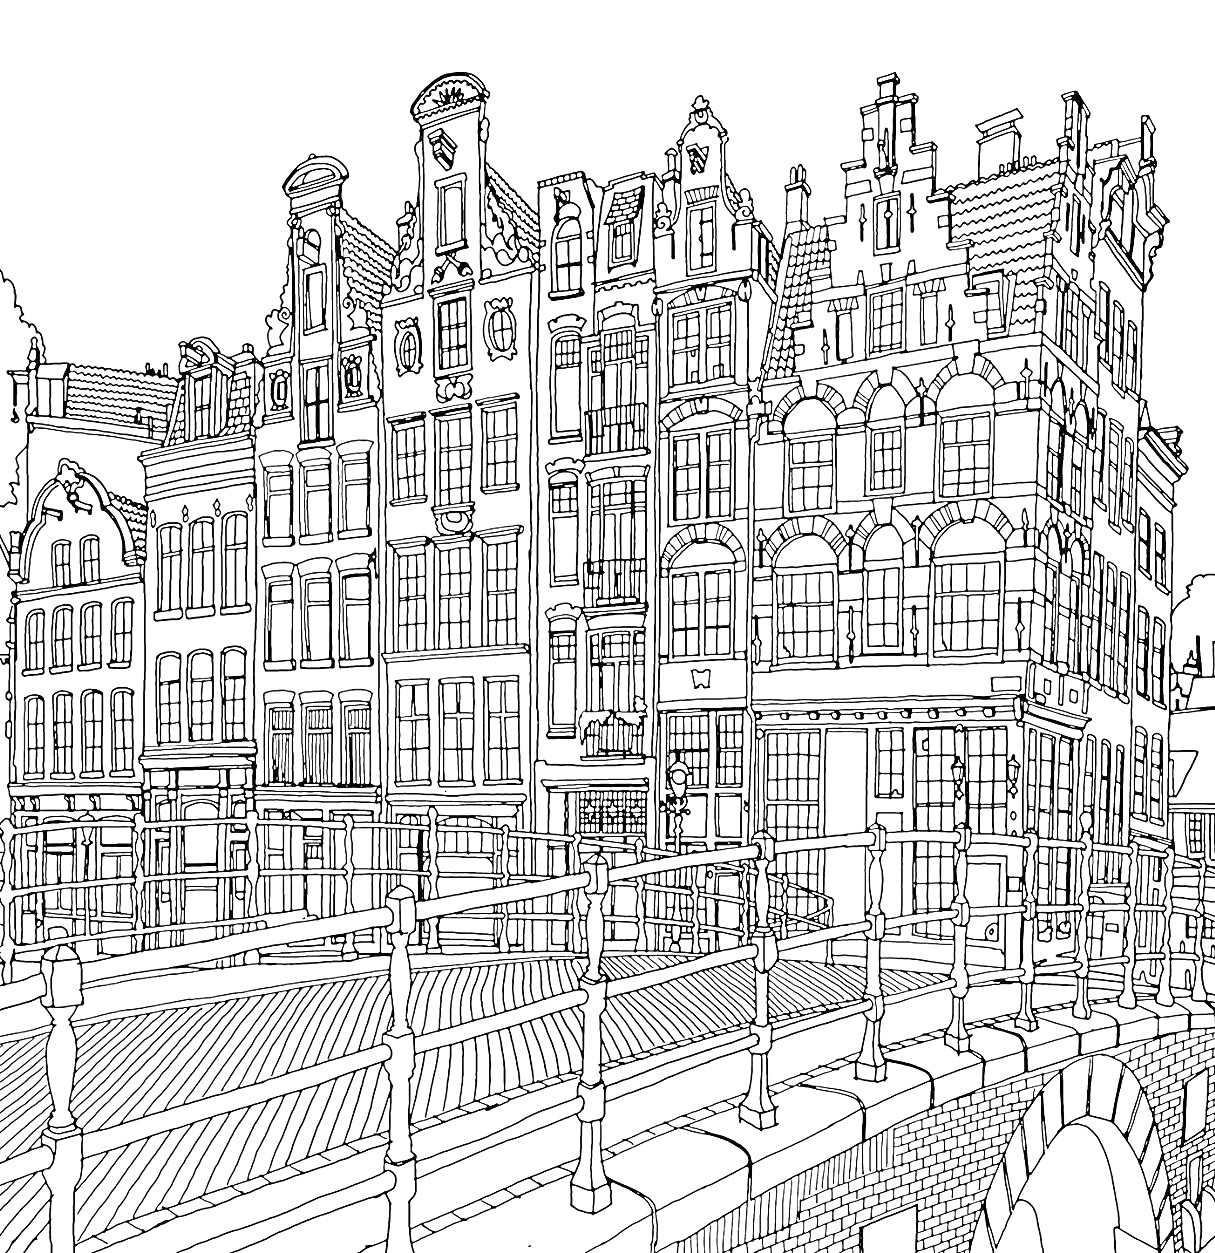 Раскраска Город с кирпичными зданиями и мостом через канал, многоэтажные дома с окнами и деталями фасадов в голландском стиле